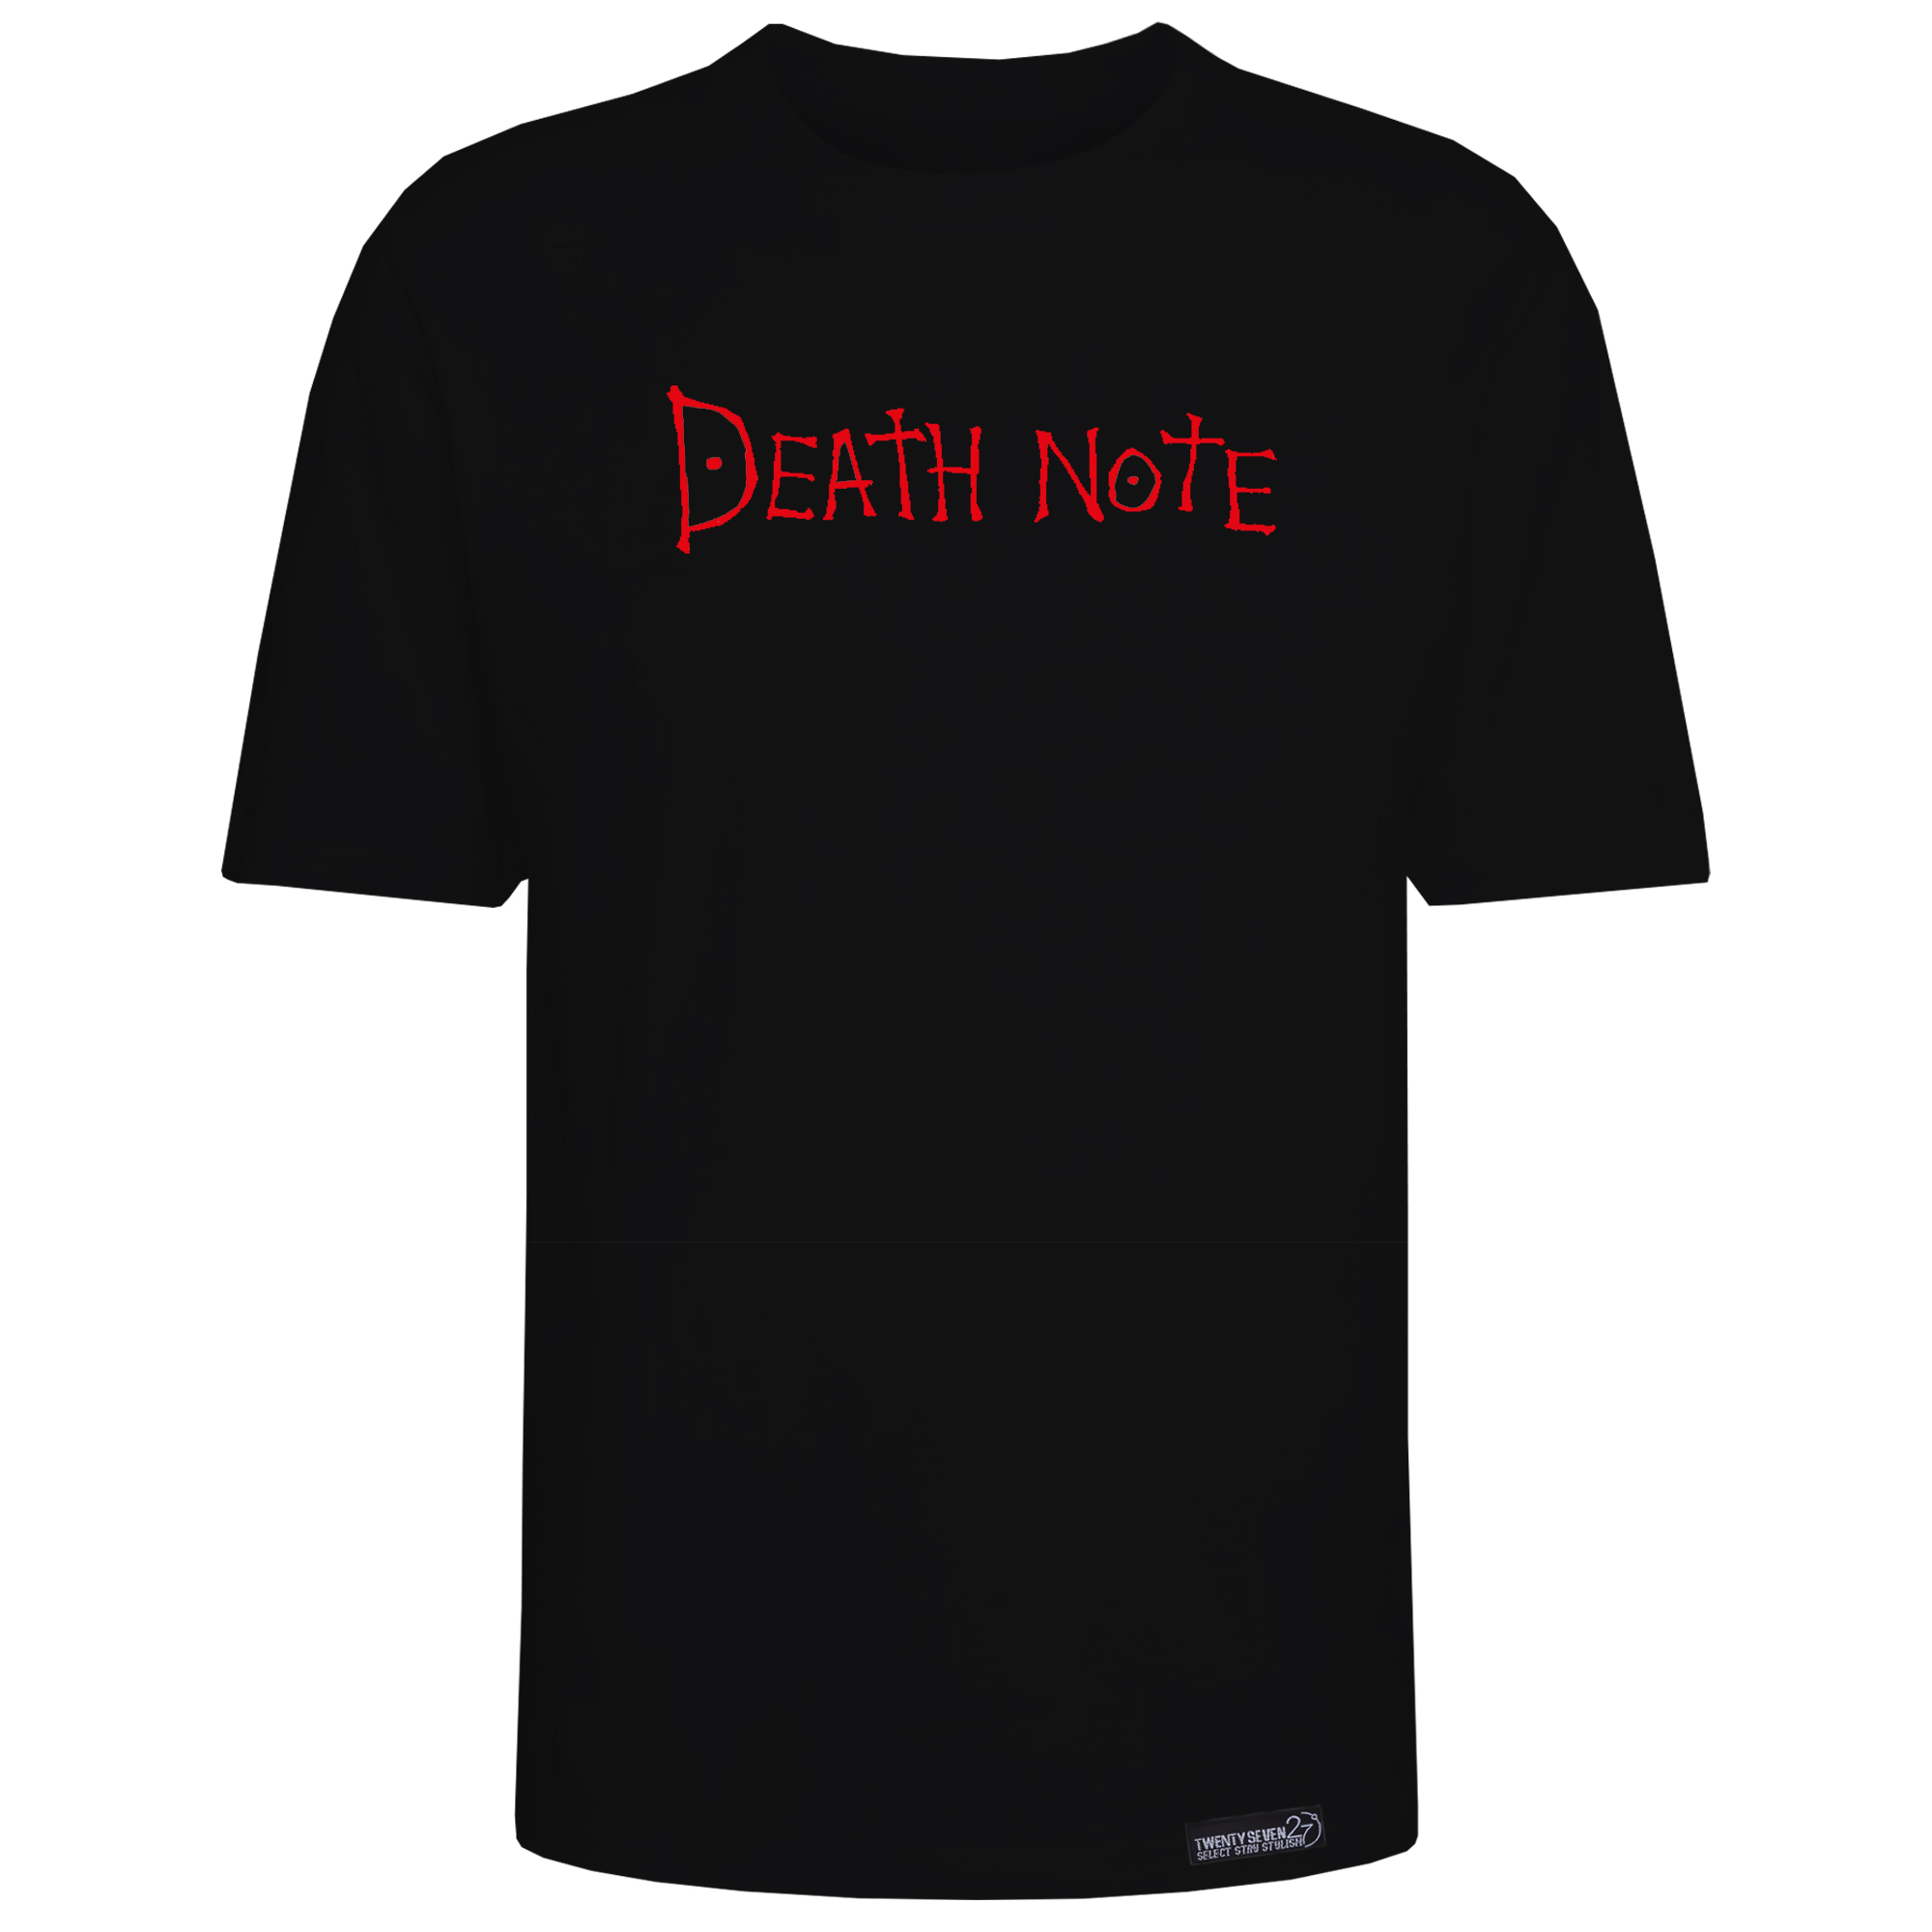 تی شرت آستین کوتاه مردانه 27 مدل Death note کد KV302 رنگ مشکی -  - 1